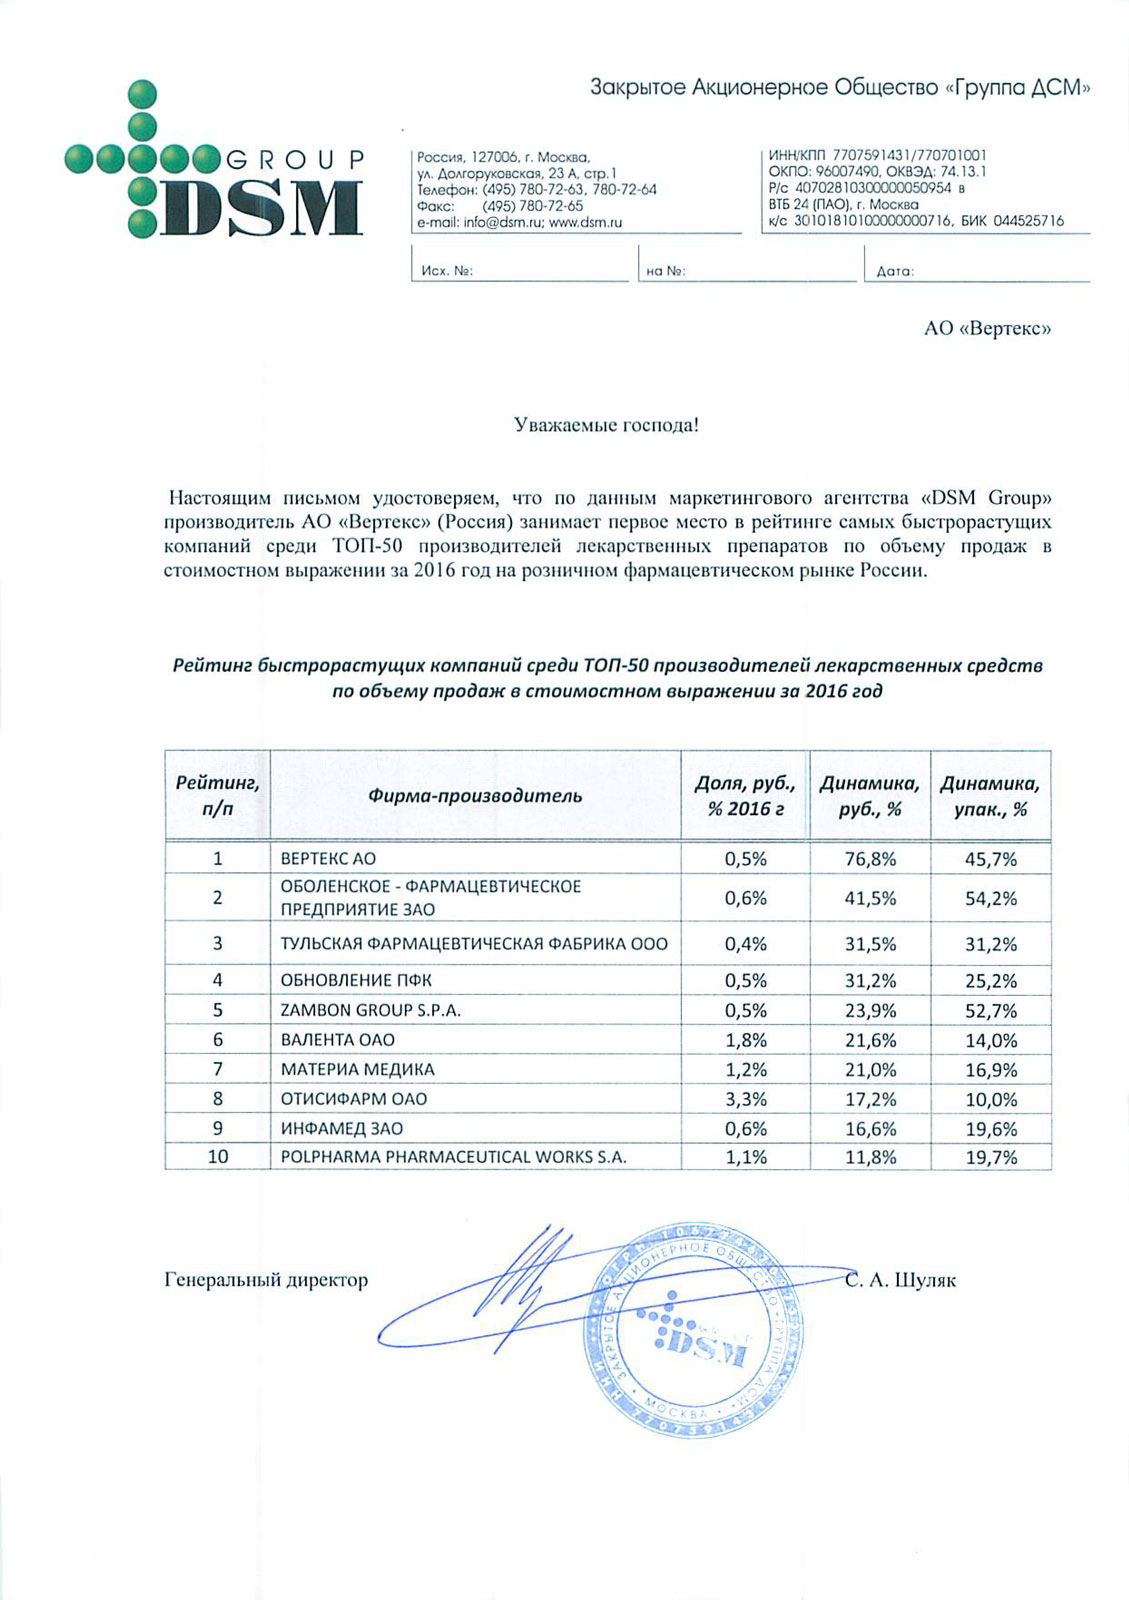 Рейтинги DSM Group, 2016 г.: лидерство АО "ВЕРТЕКС" среди быстрорастущих фармпроизводителей в РФ, лидерство бренда ALERANA в двух сегментах